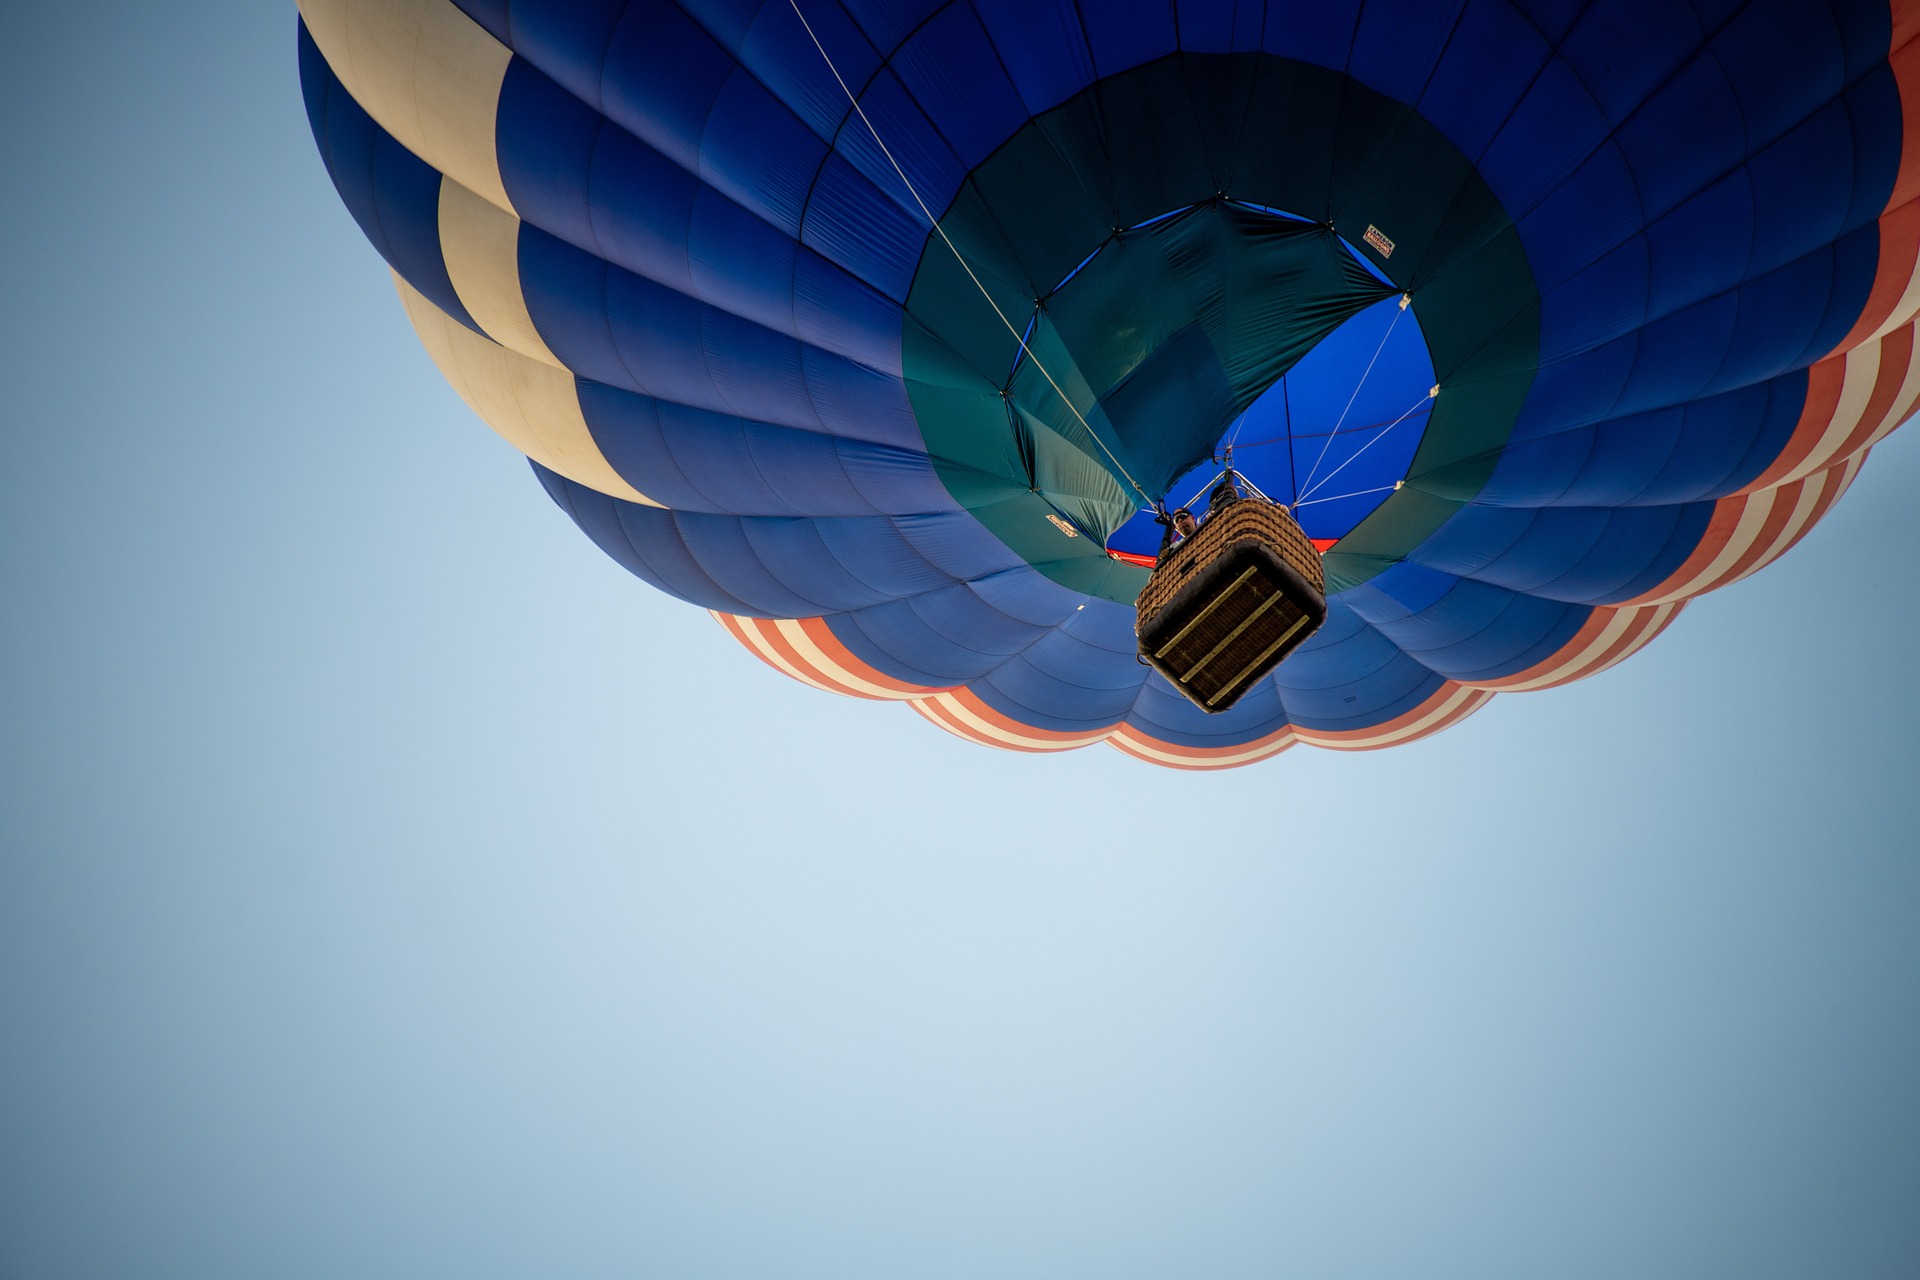 Αερόστατο έπεσε σε καλώδια ρεύματος: Δύο τραυματίες